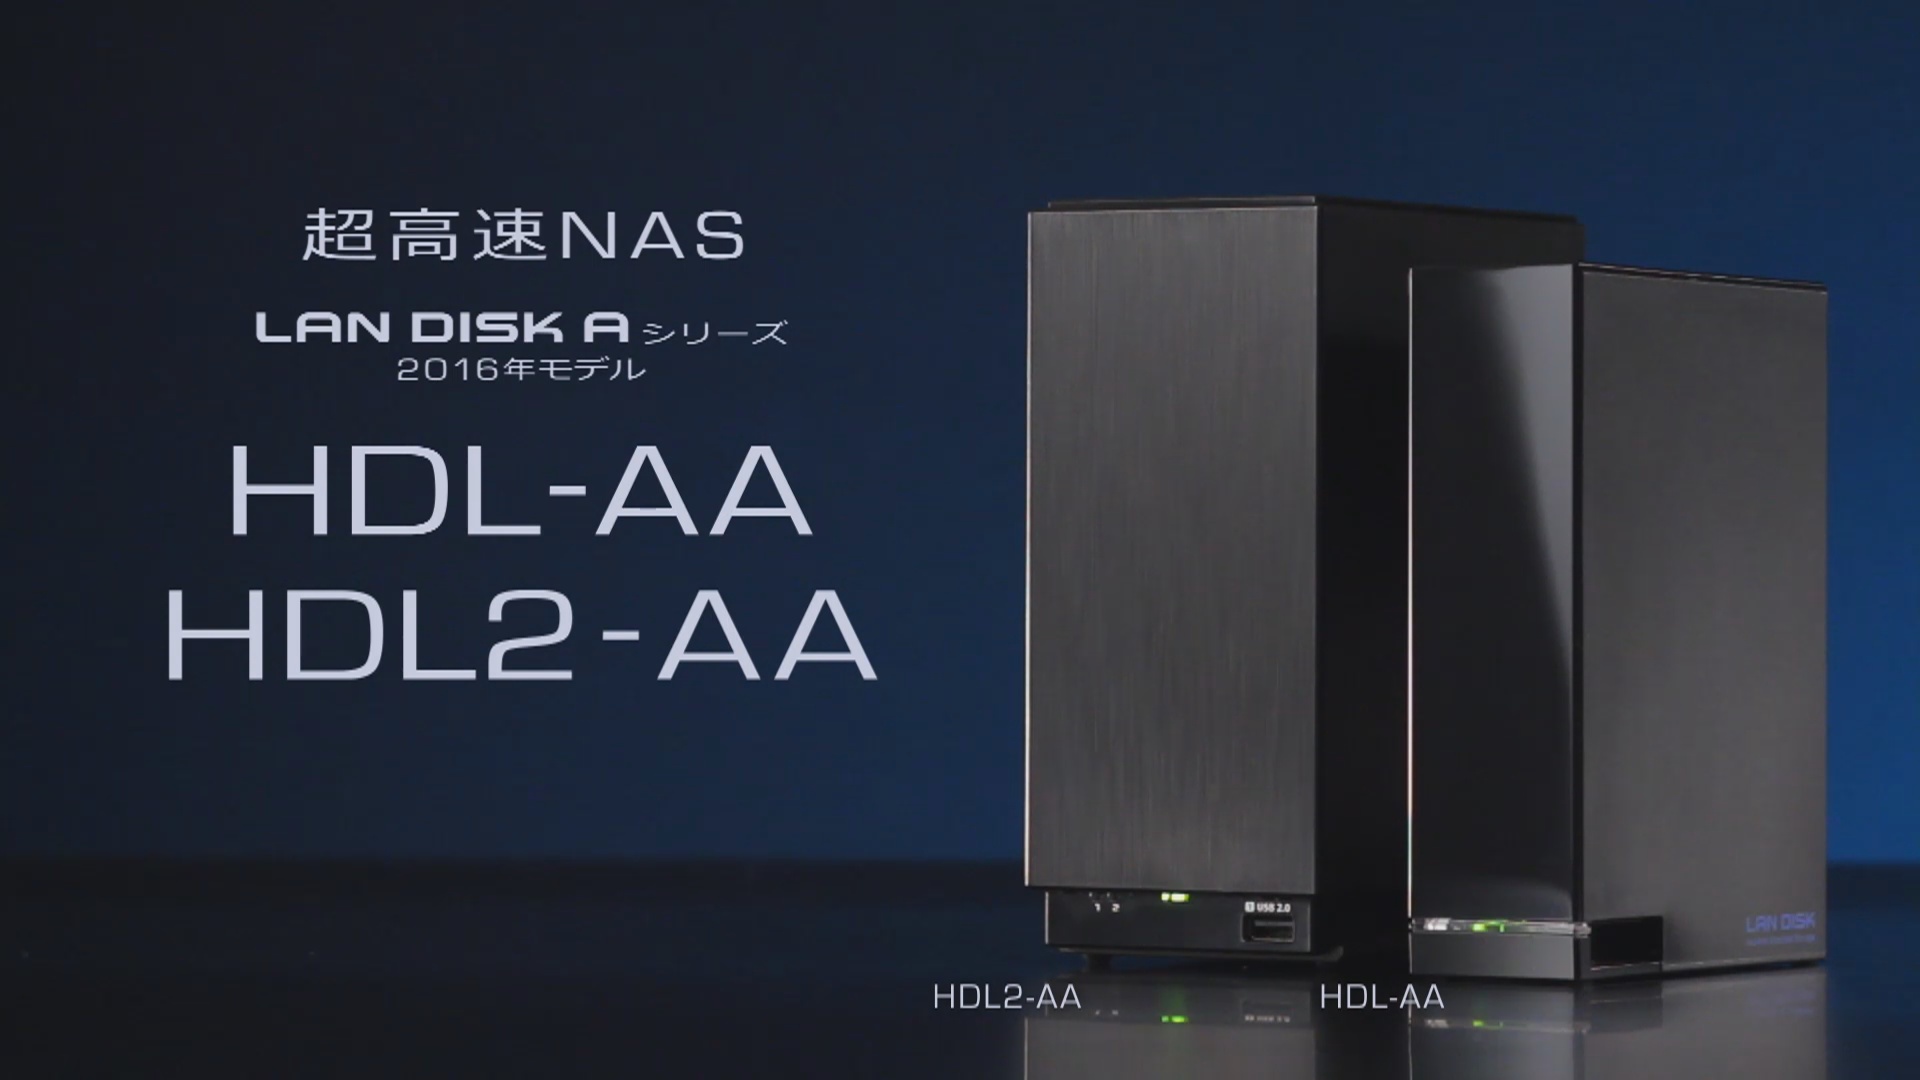 高性能デュアルコアCPU搭載の超高速NAS「HDL-AA」「HDL2-AA」特集